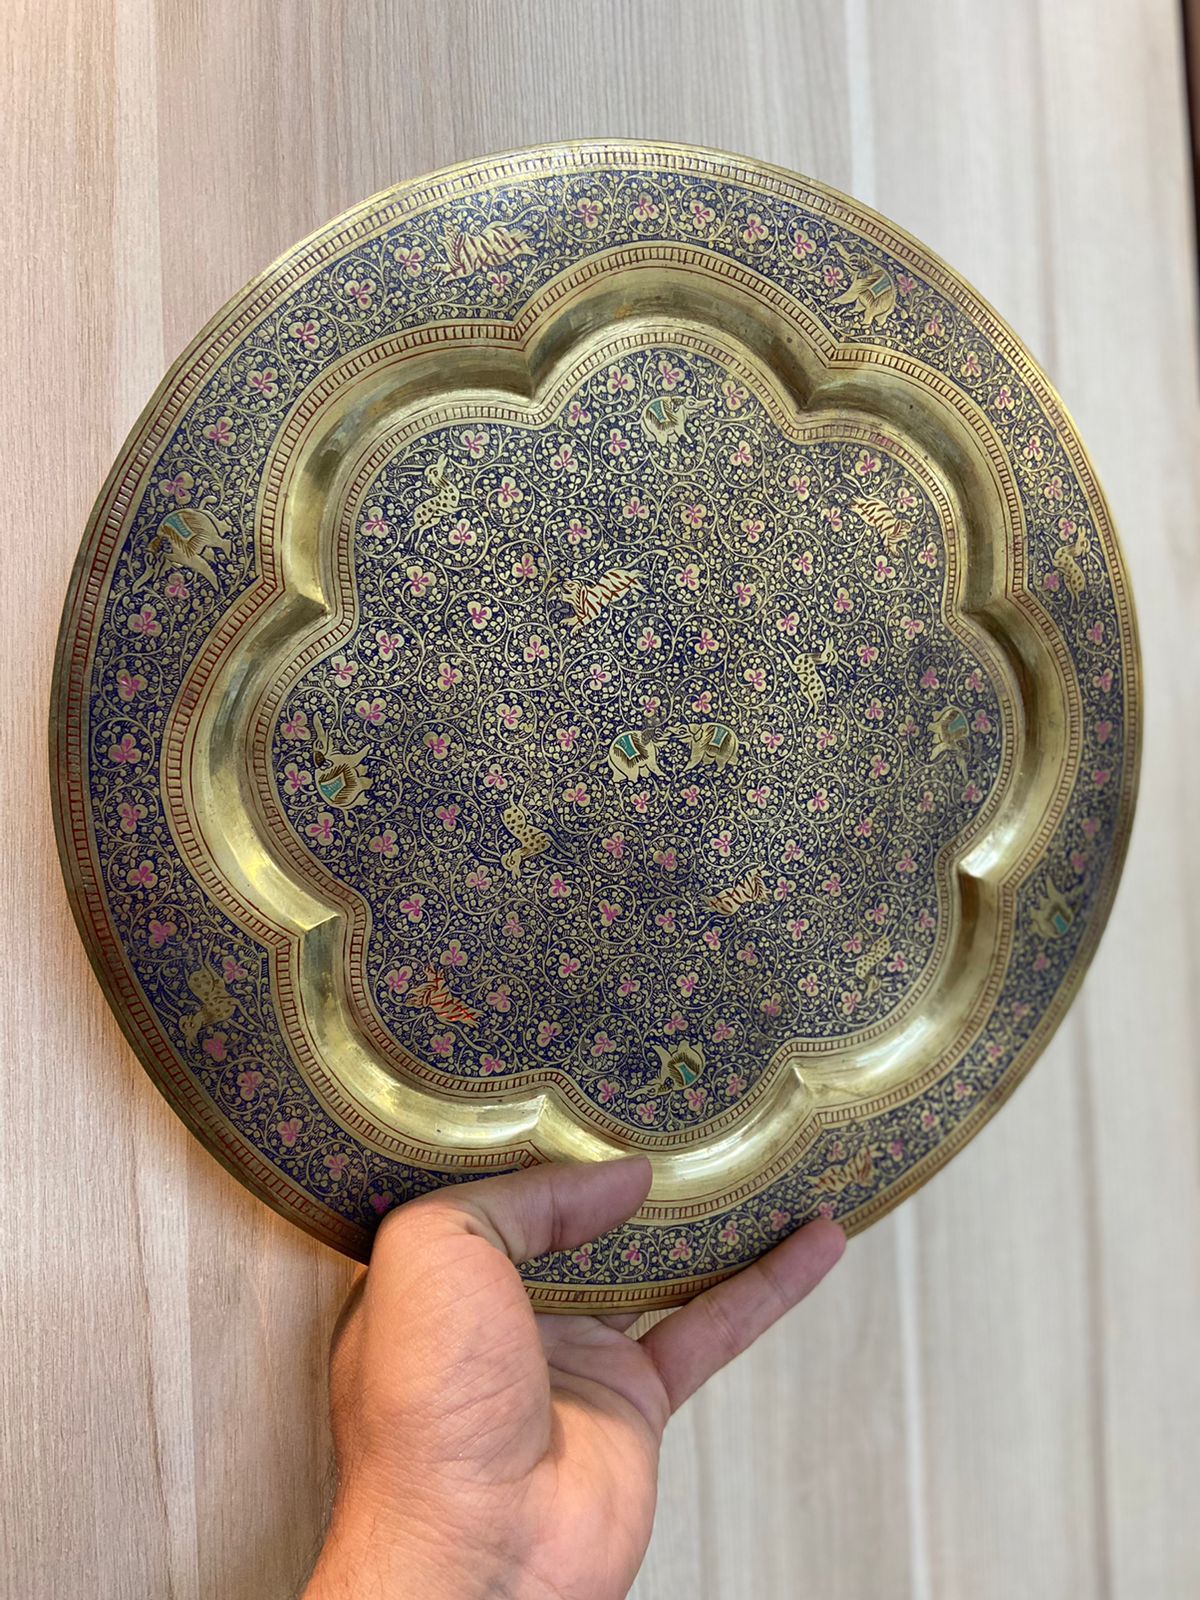 Handmade Meenakari Brass Wall Decorative Plates 12 inches